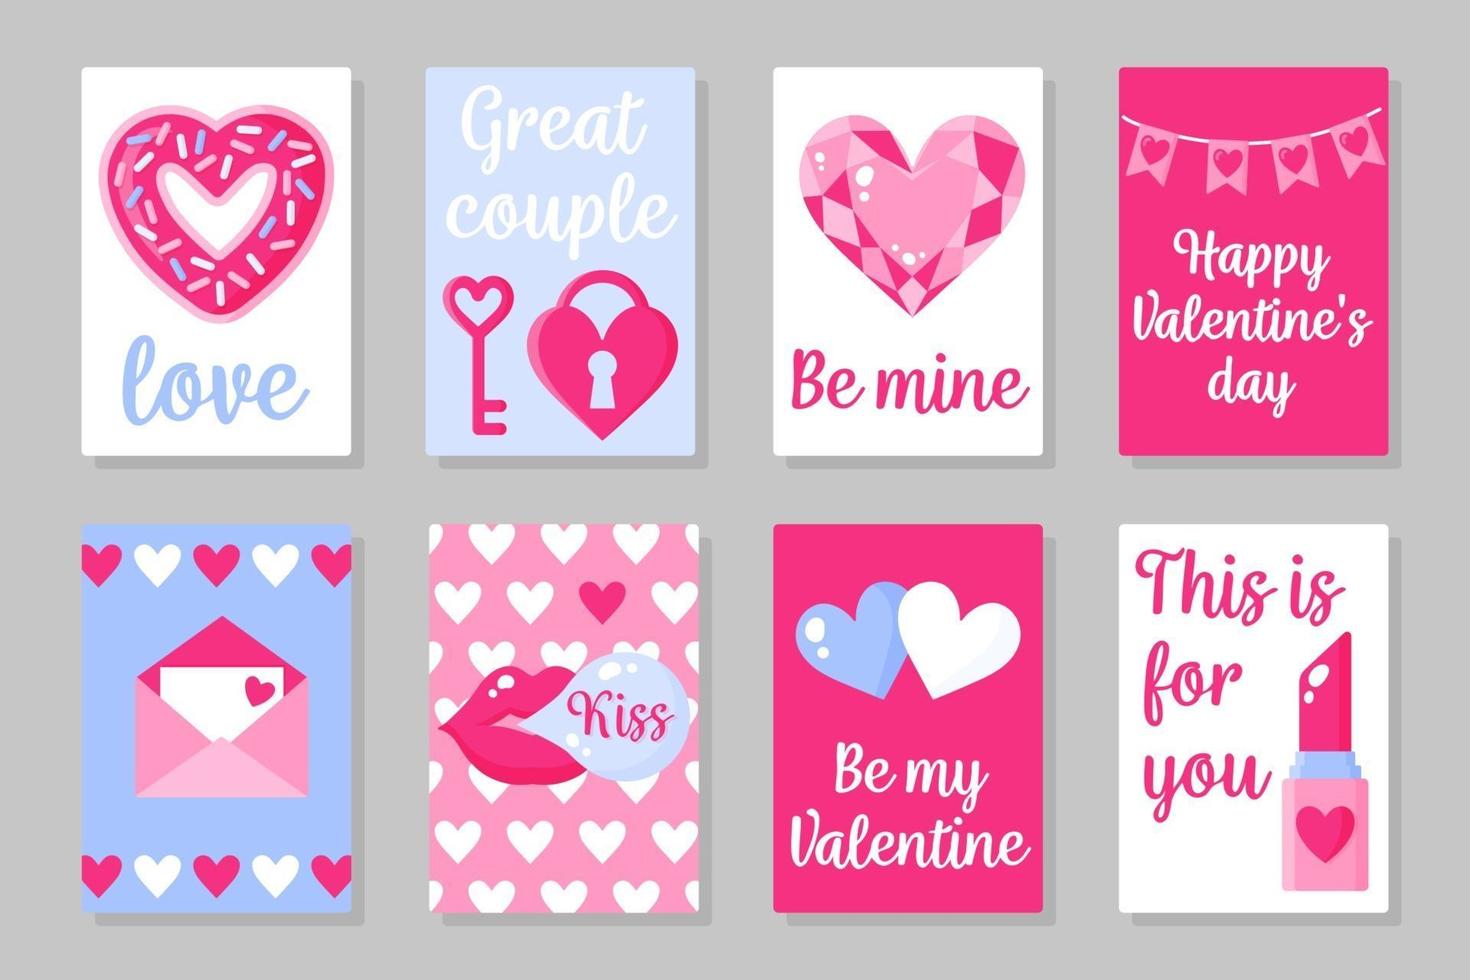 Satz von rosa, weißen und blauen farbigen Karten für Valentinstag oder Hochzeit. Vektor flaches Design lokalisiert auf grauem Hintergrund